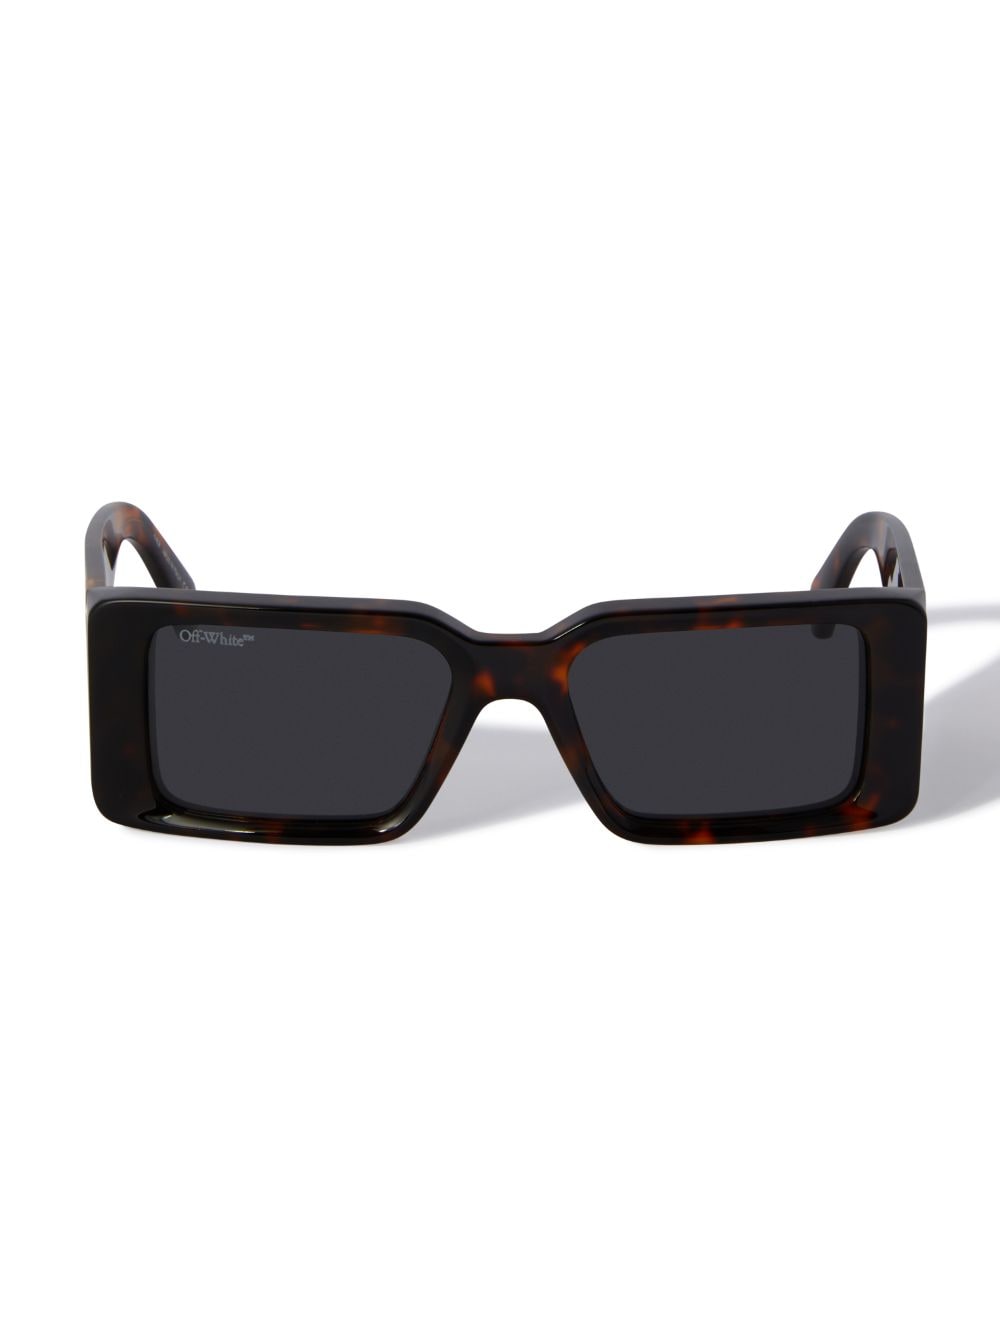 Off-white Milano Sunglasses In Black